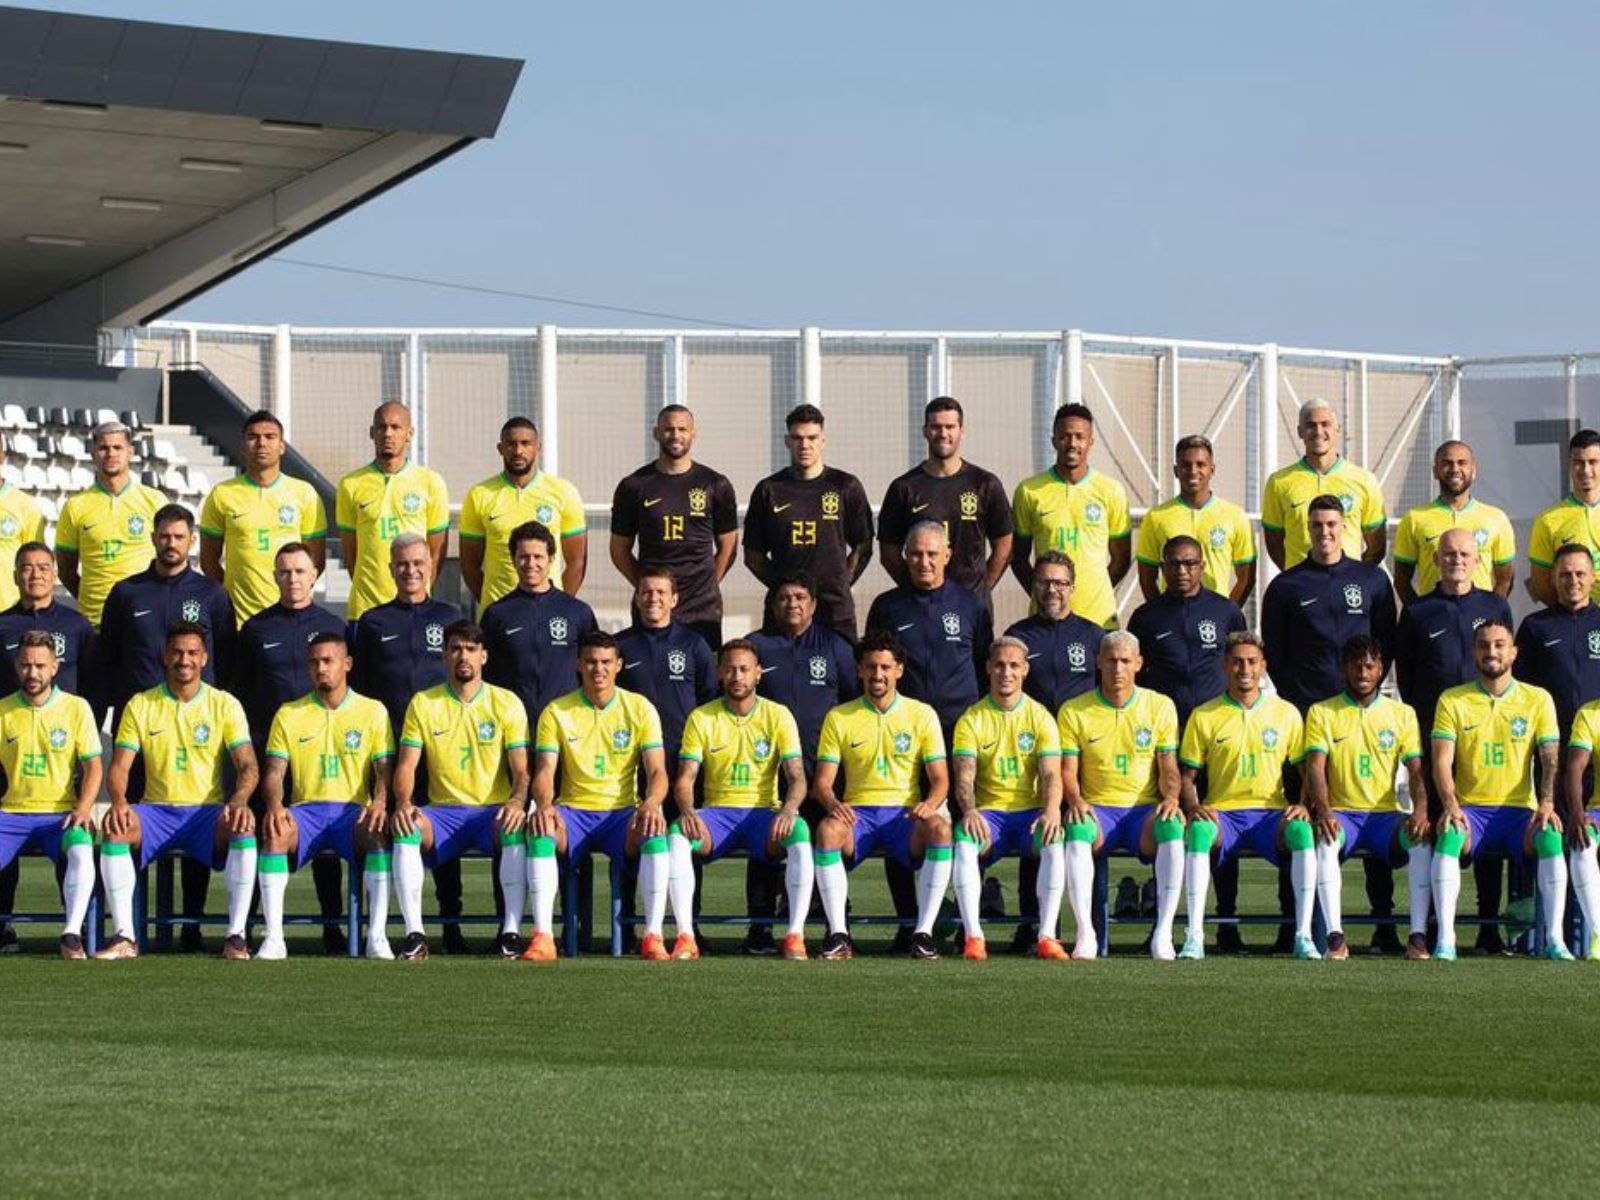 Seleção brasileira chega ao Catar para disputa da Copa do Mundo 2022